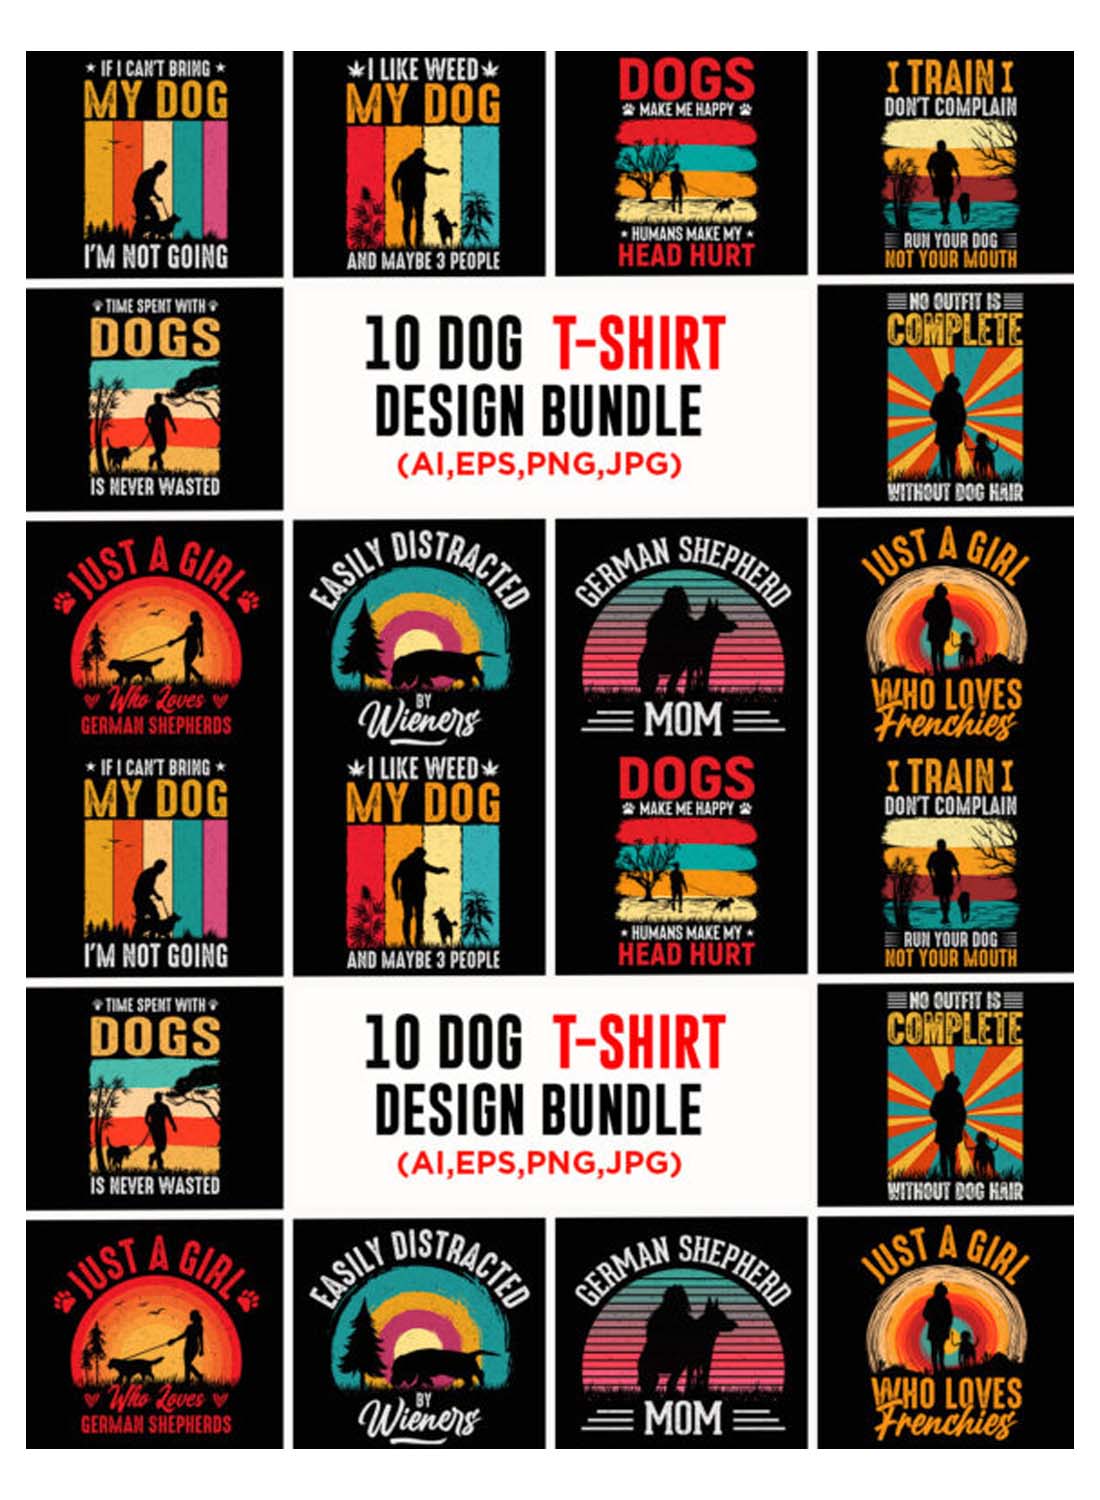 Dog T-shirt Design Bundle pinterest image.